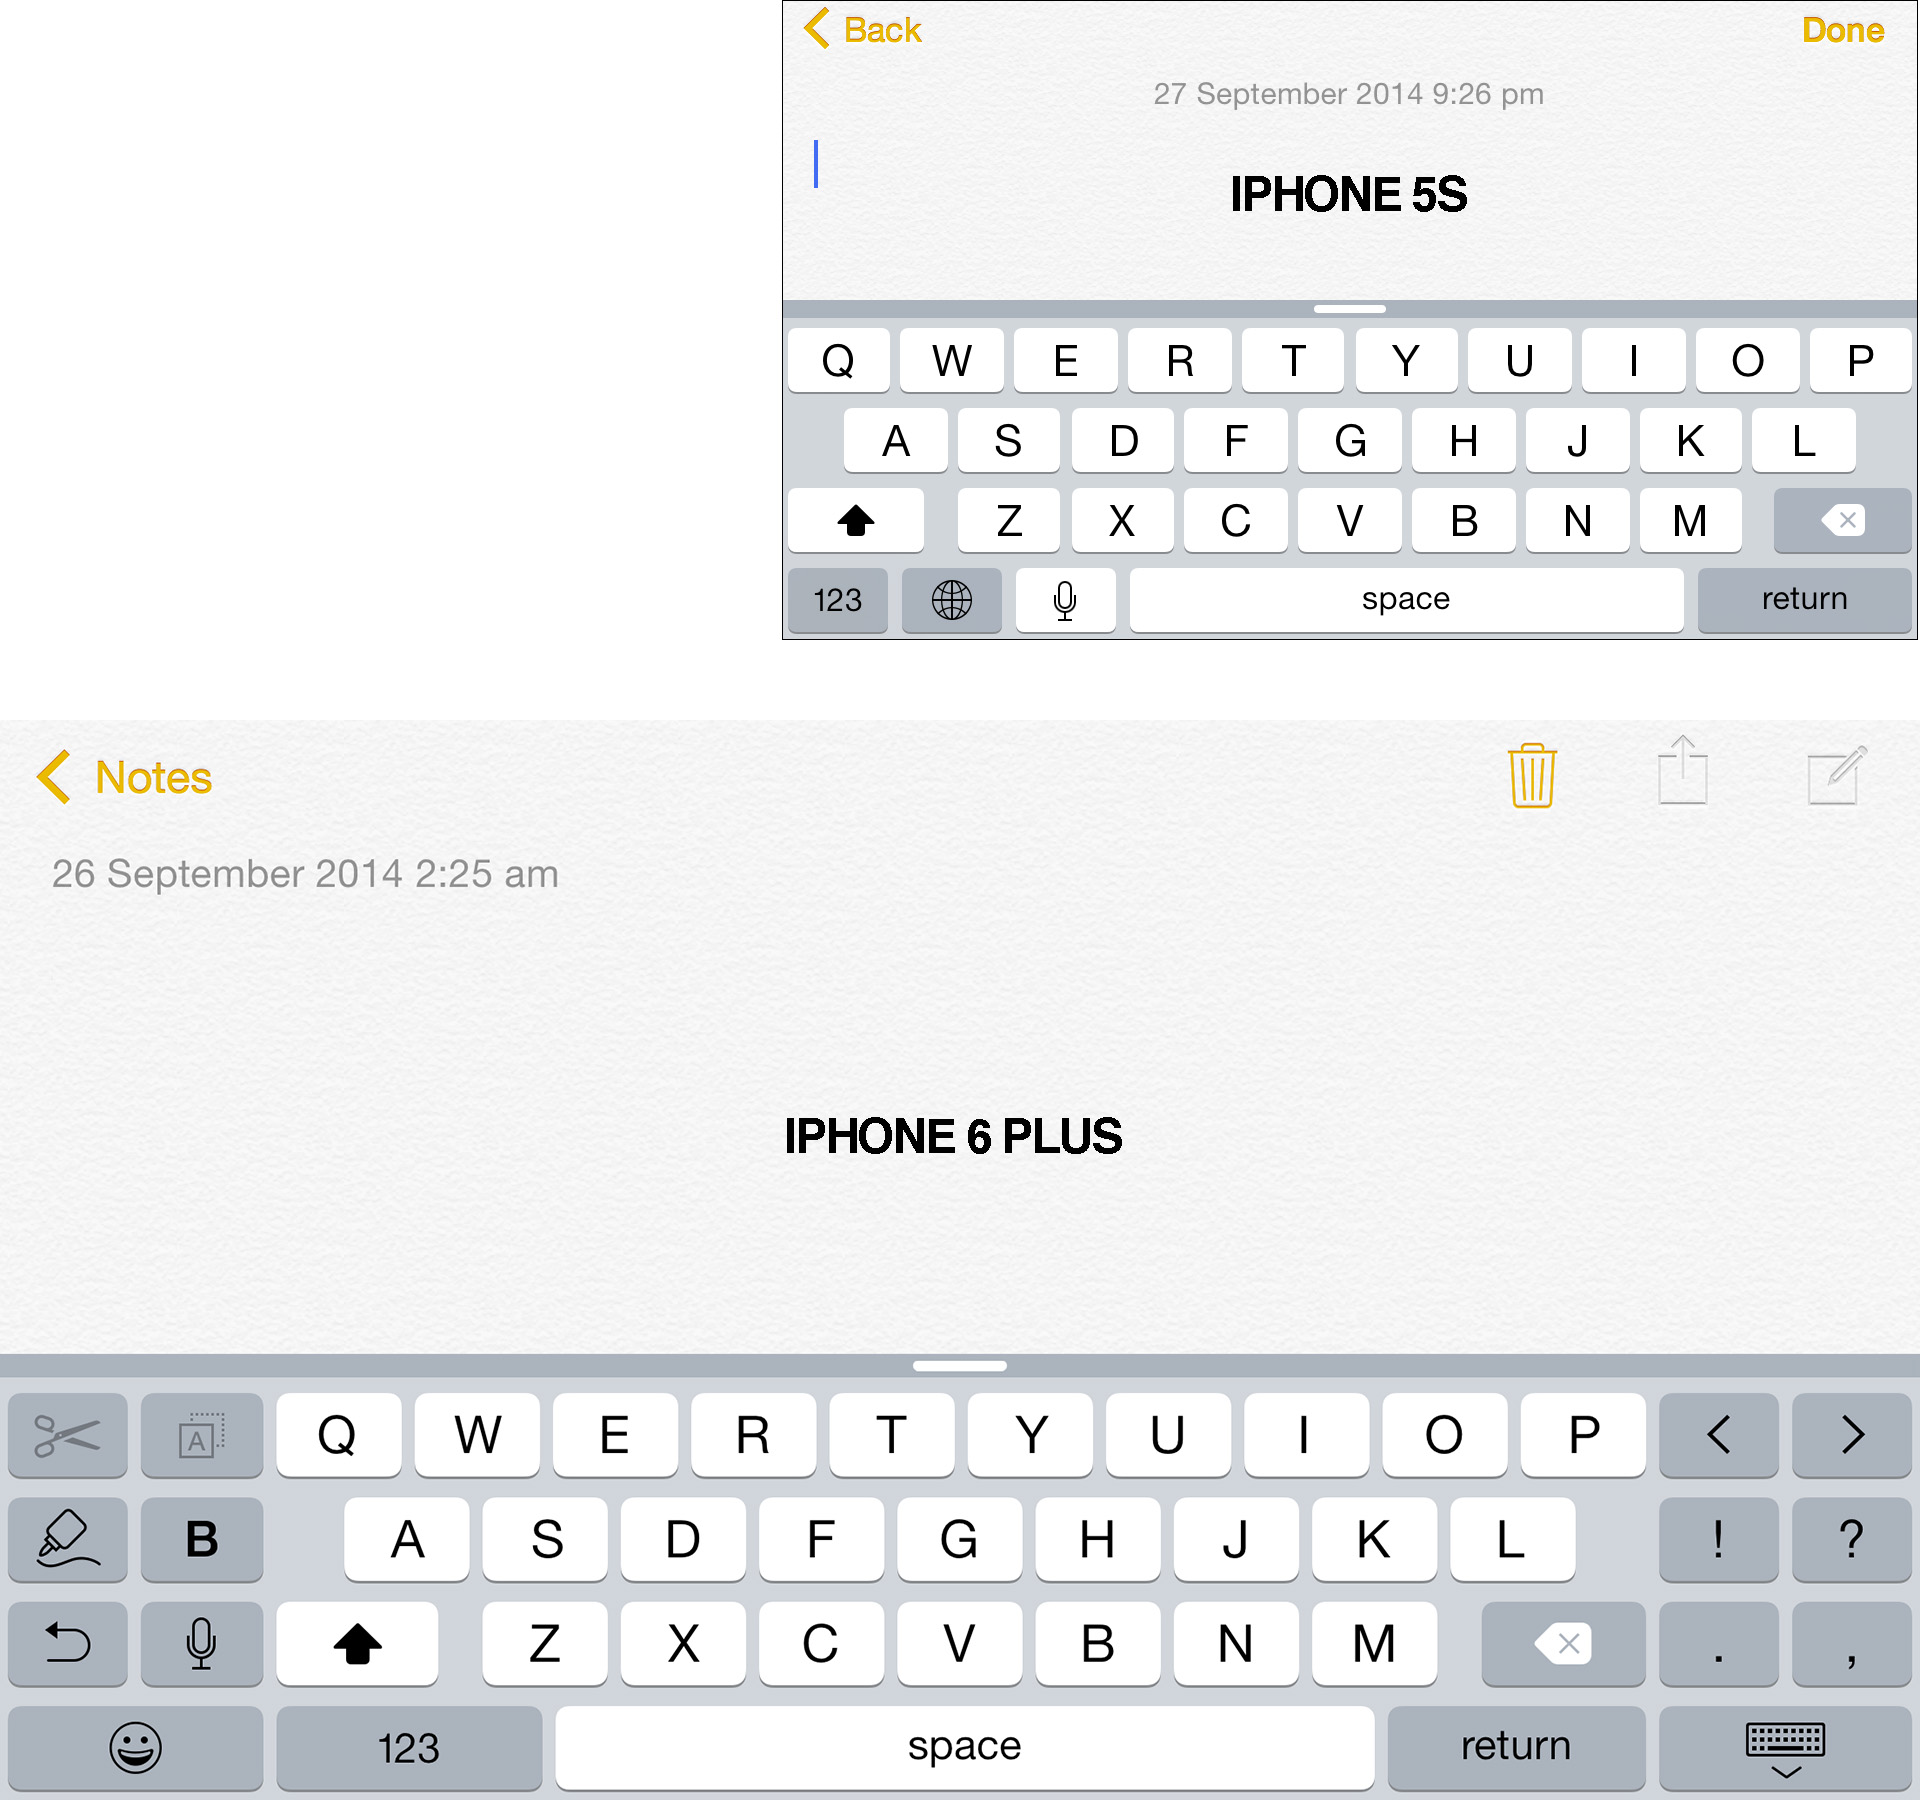 iPhone 6 Plus vs iPhone 5s - Landscape mode - Notes app